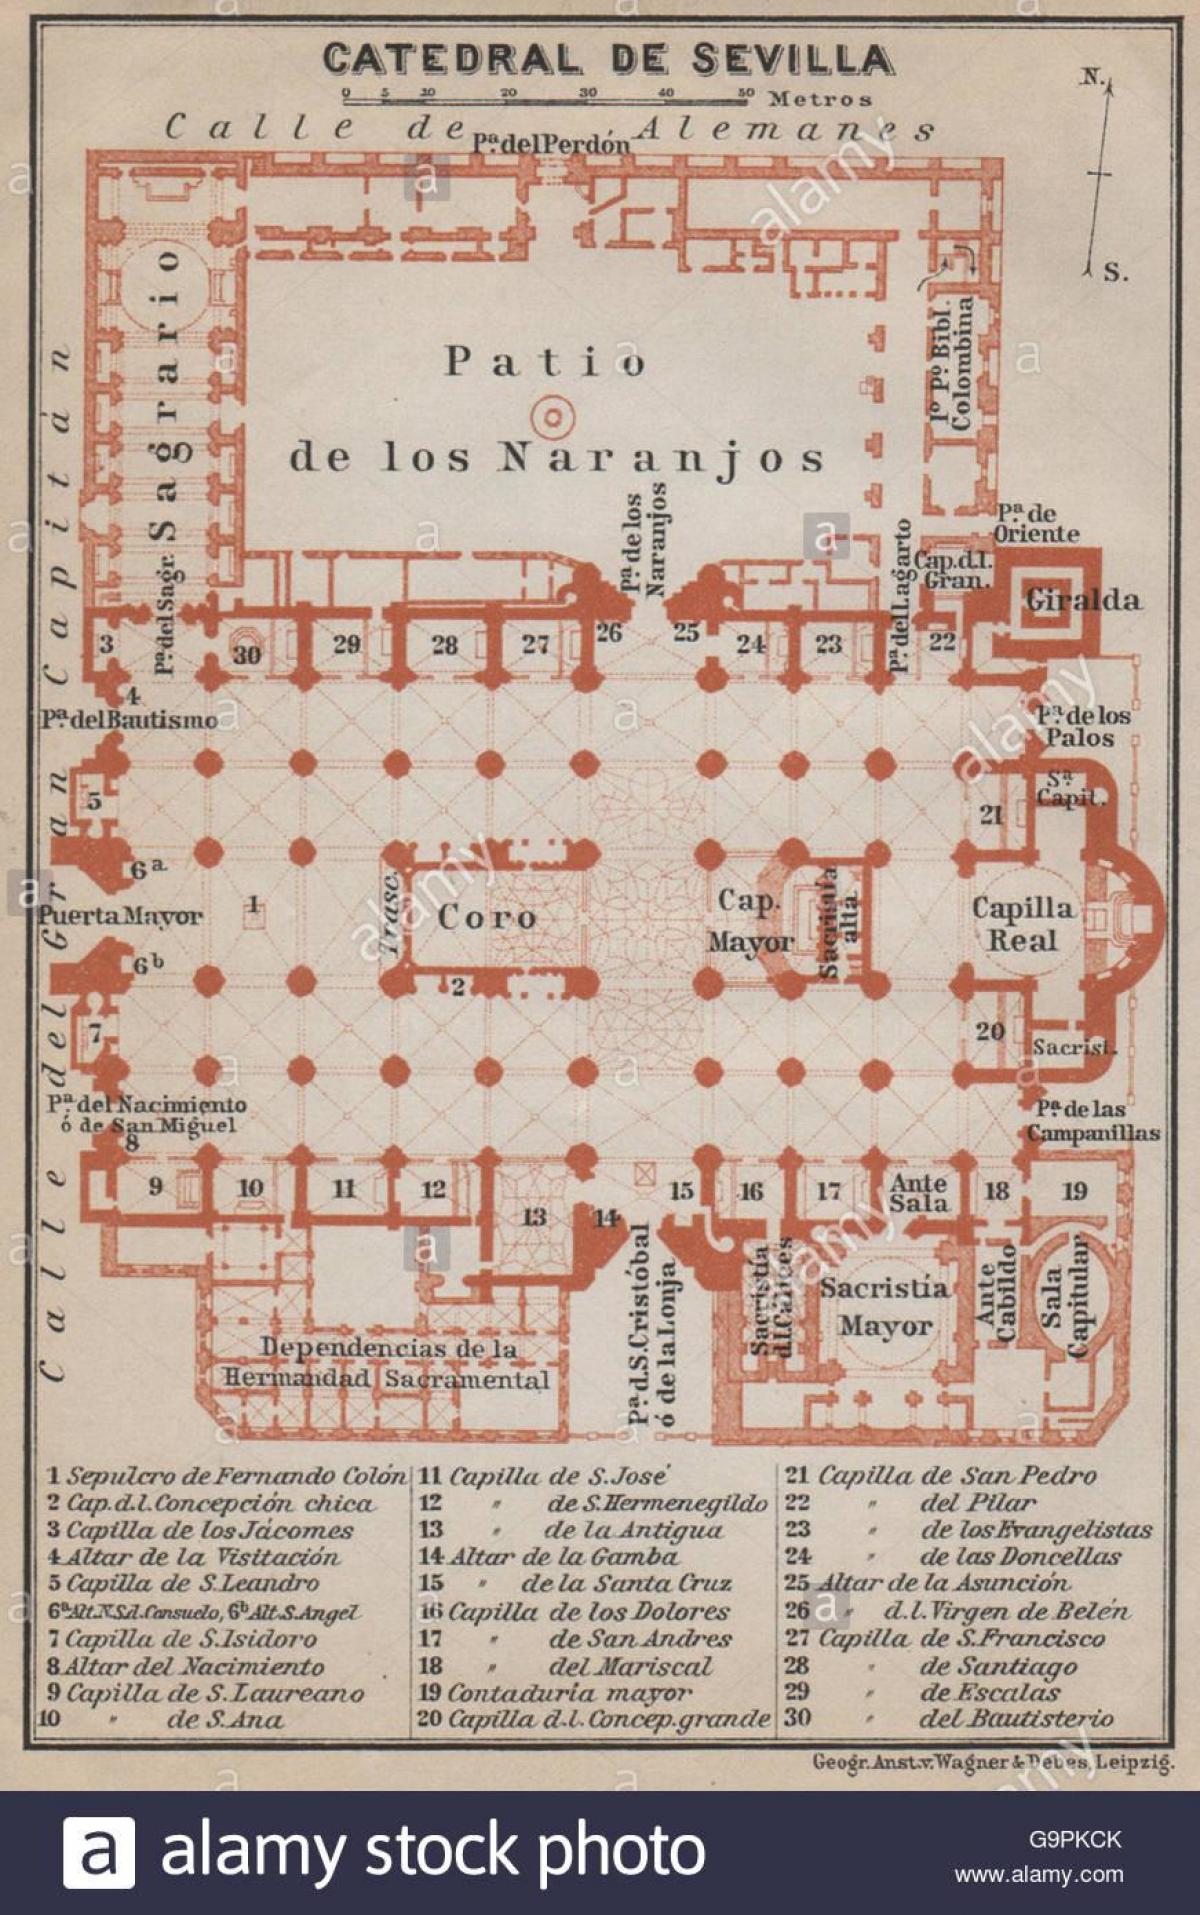 mapa ng Seville cathedral